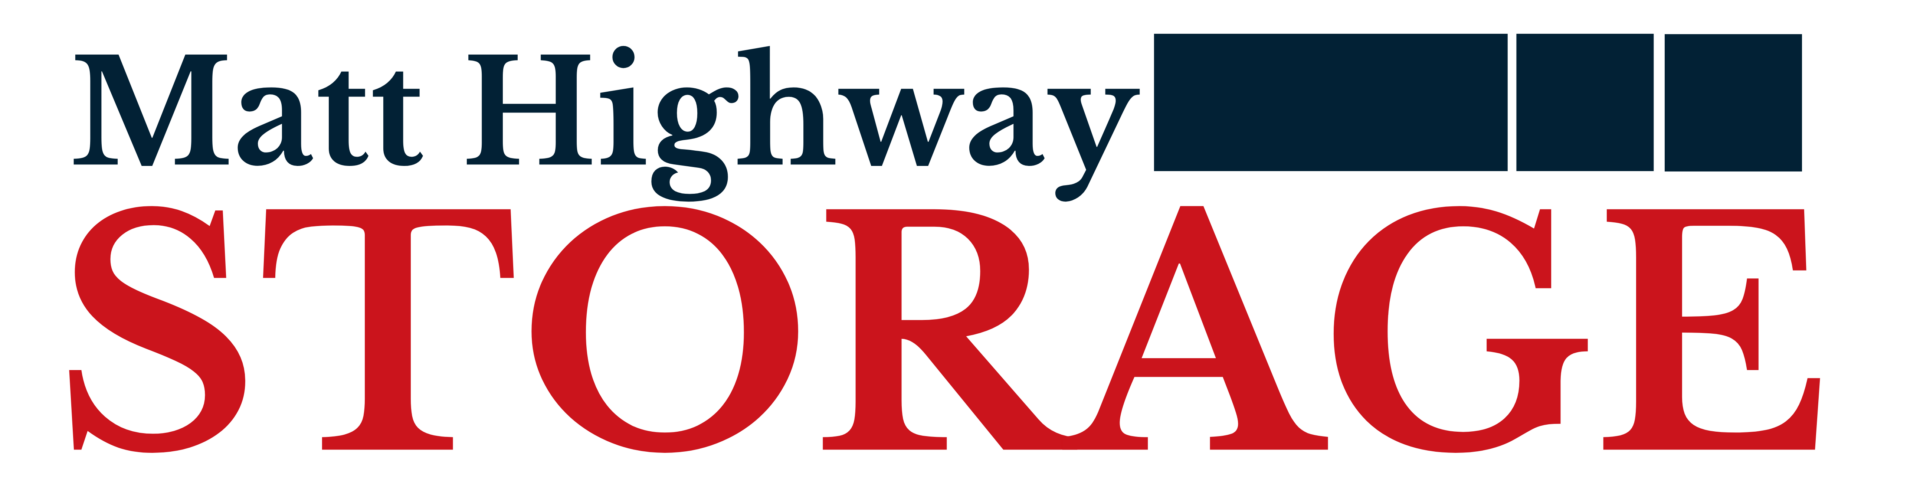 Matt Highway Storage logo